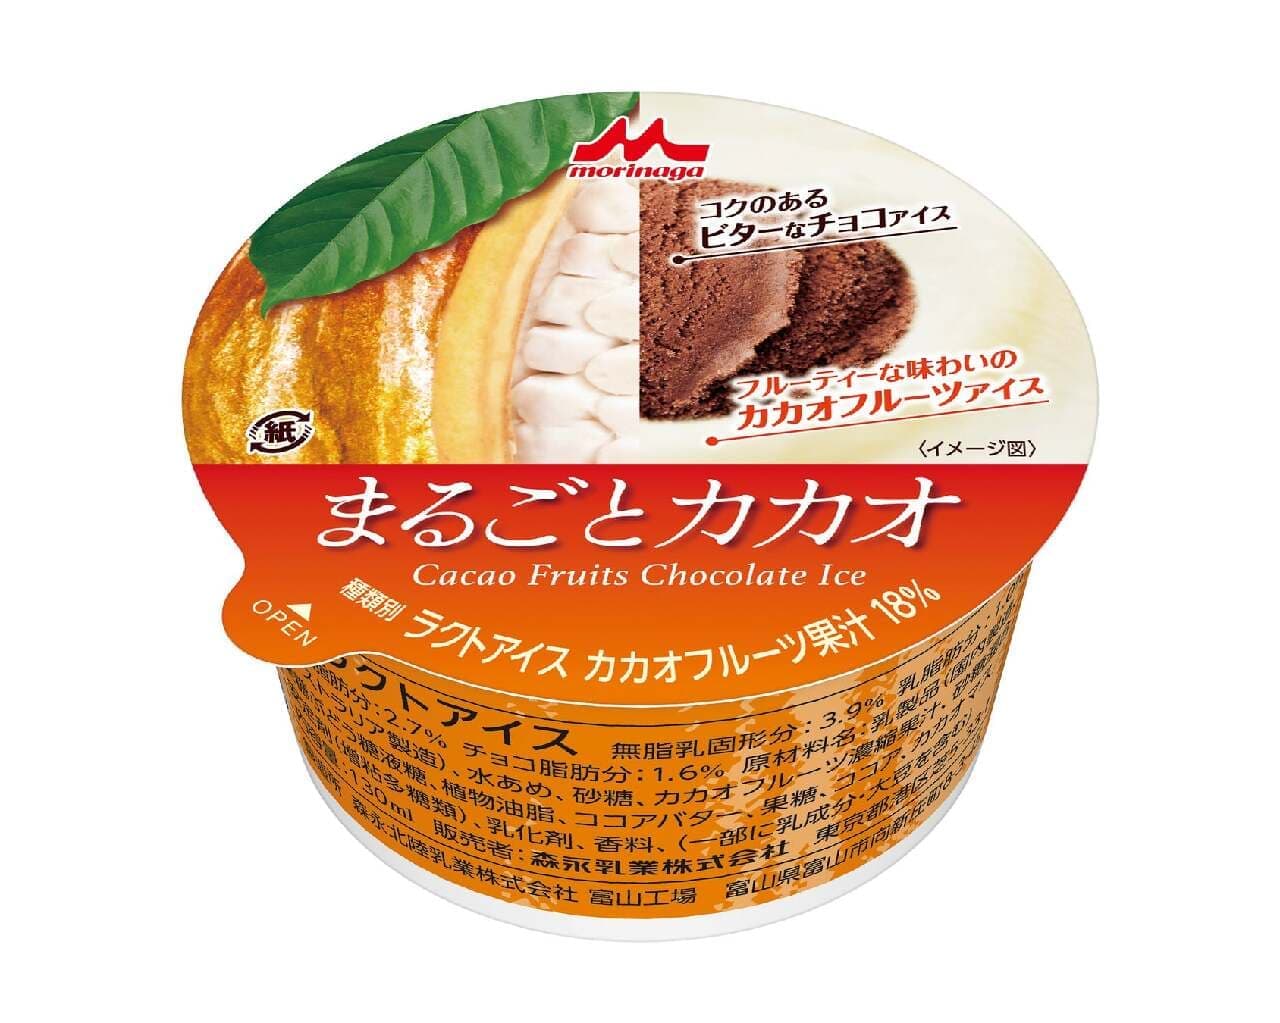 ファミリーマート廃棄されるカカオフルーツを活用した新商品のアイス「まるごとカカオ」2月6日発売 画像2